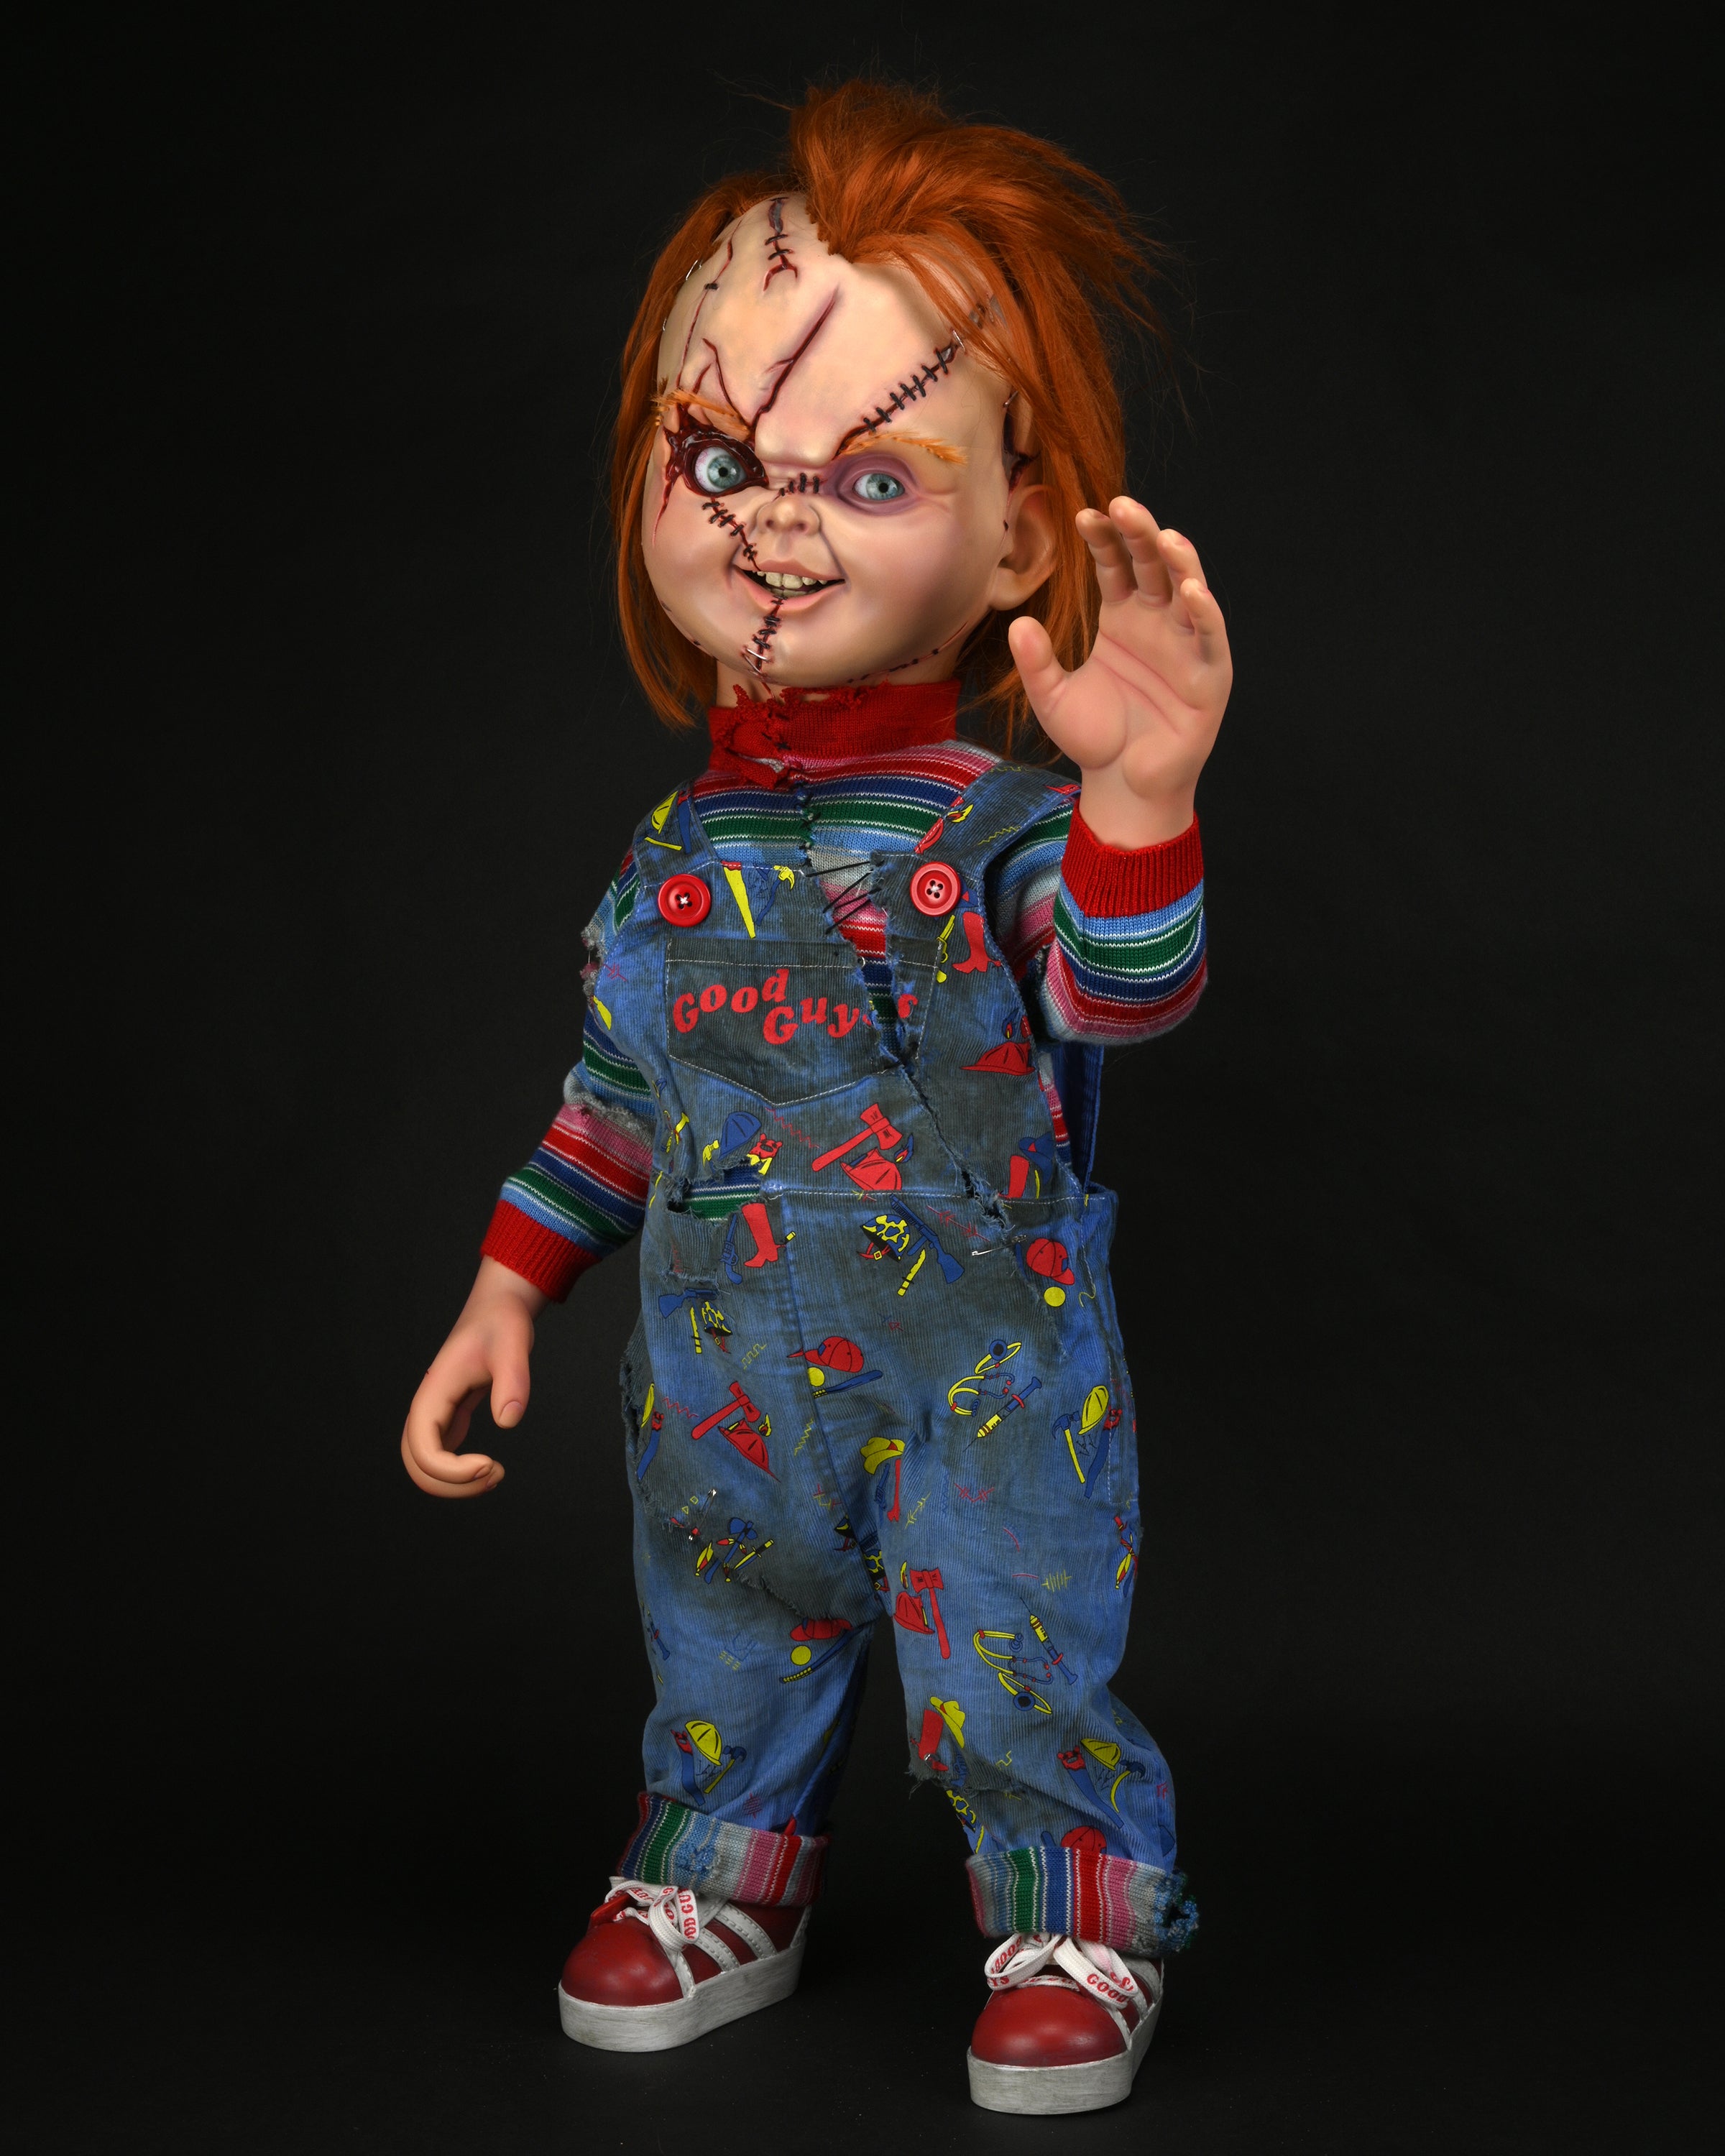 Bride of Chucky - 1:1 Replica - Life-Size Chucky (PRE-ORDER)